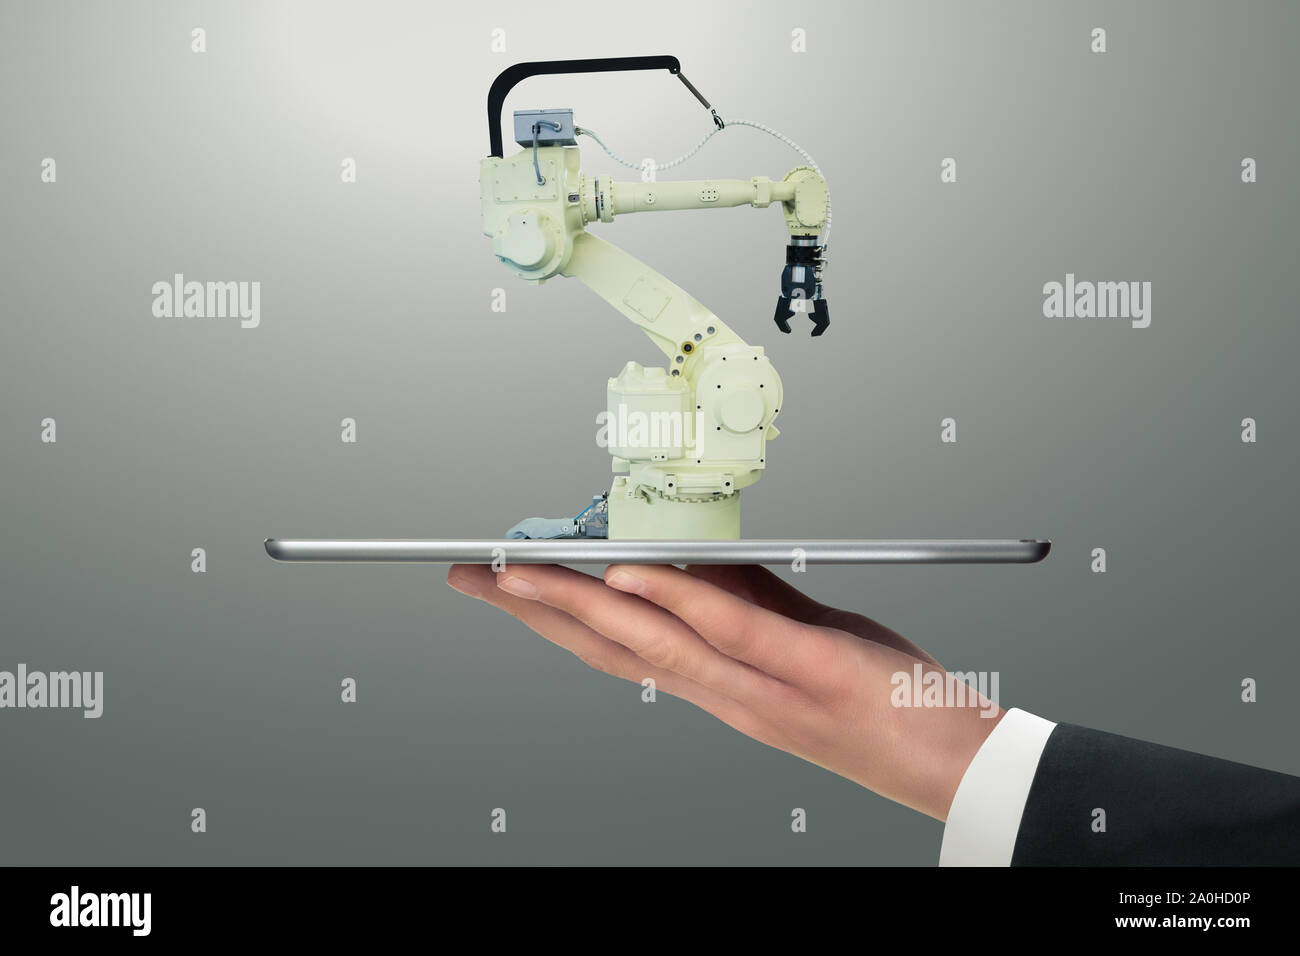 Homme tenant une tablette numérique avec robot de manutention avec bras robotique. Banque D'Images